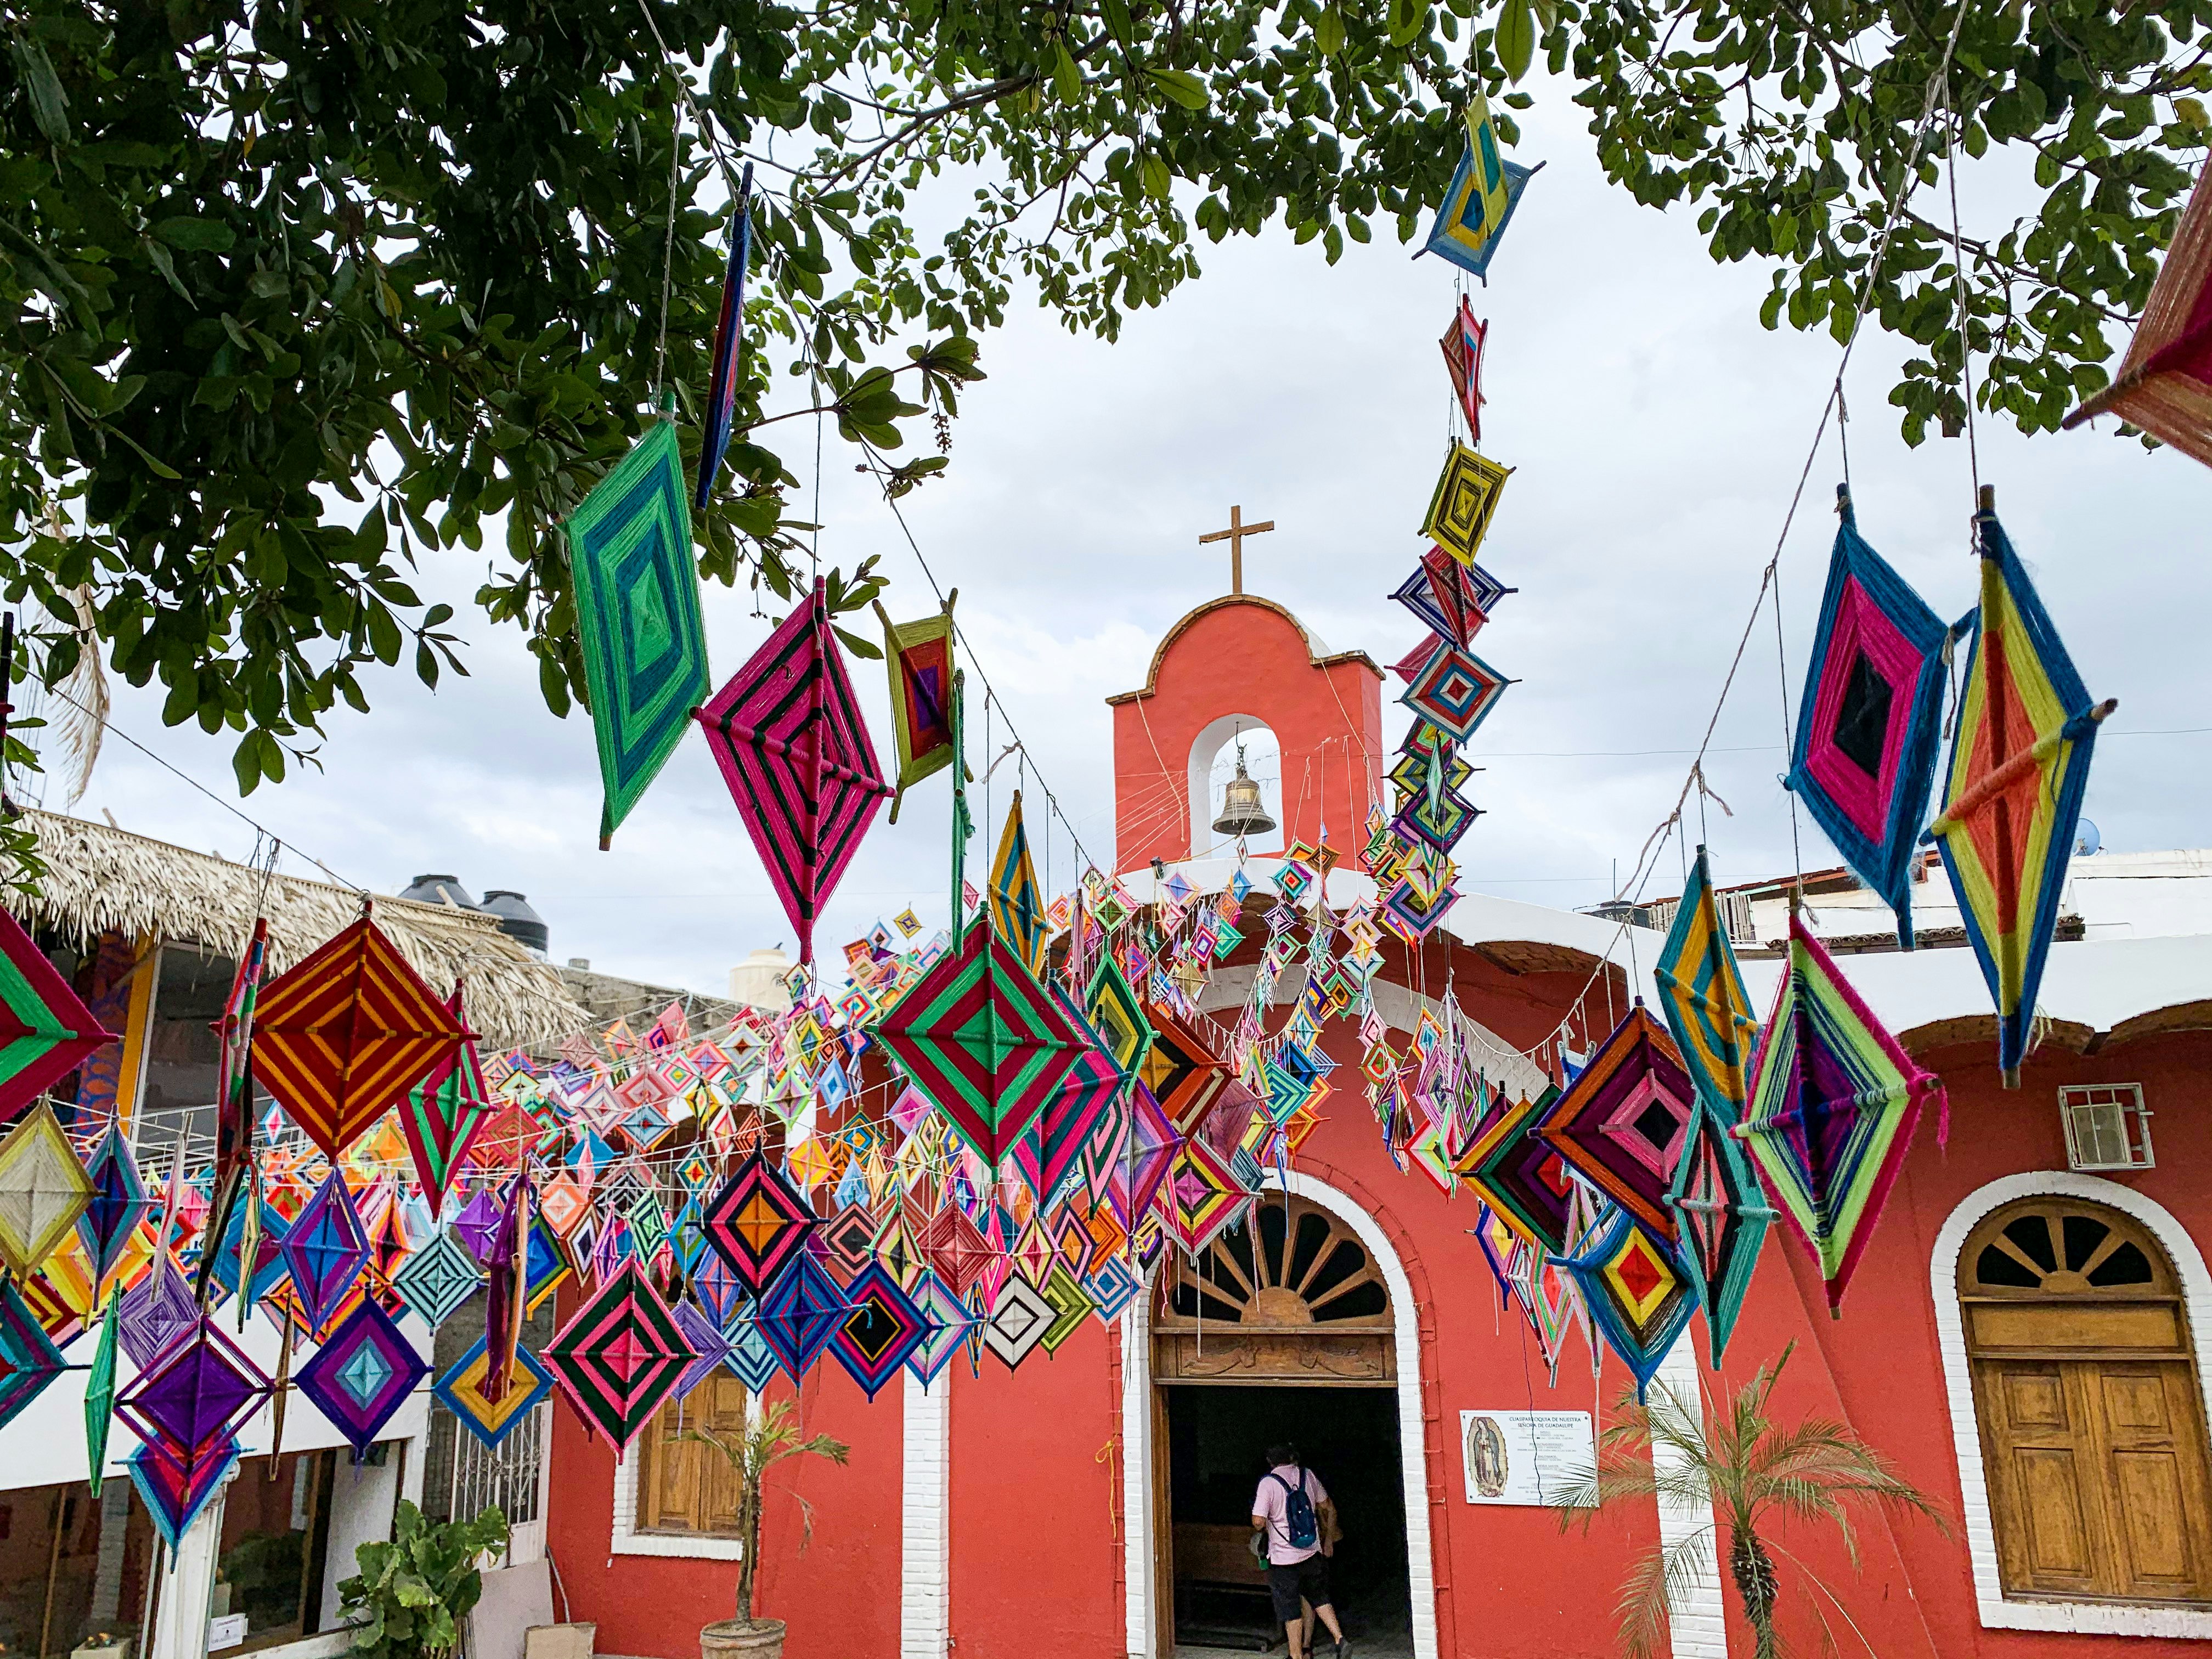 Woven Ojo de Dios strung up outside a colorful church